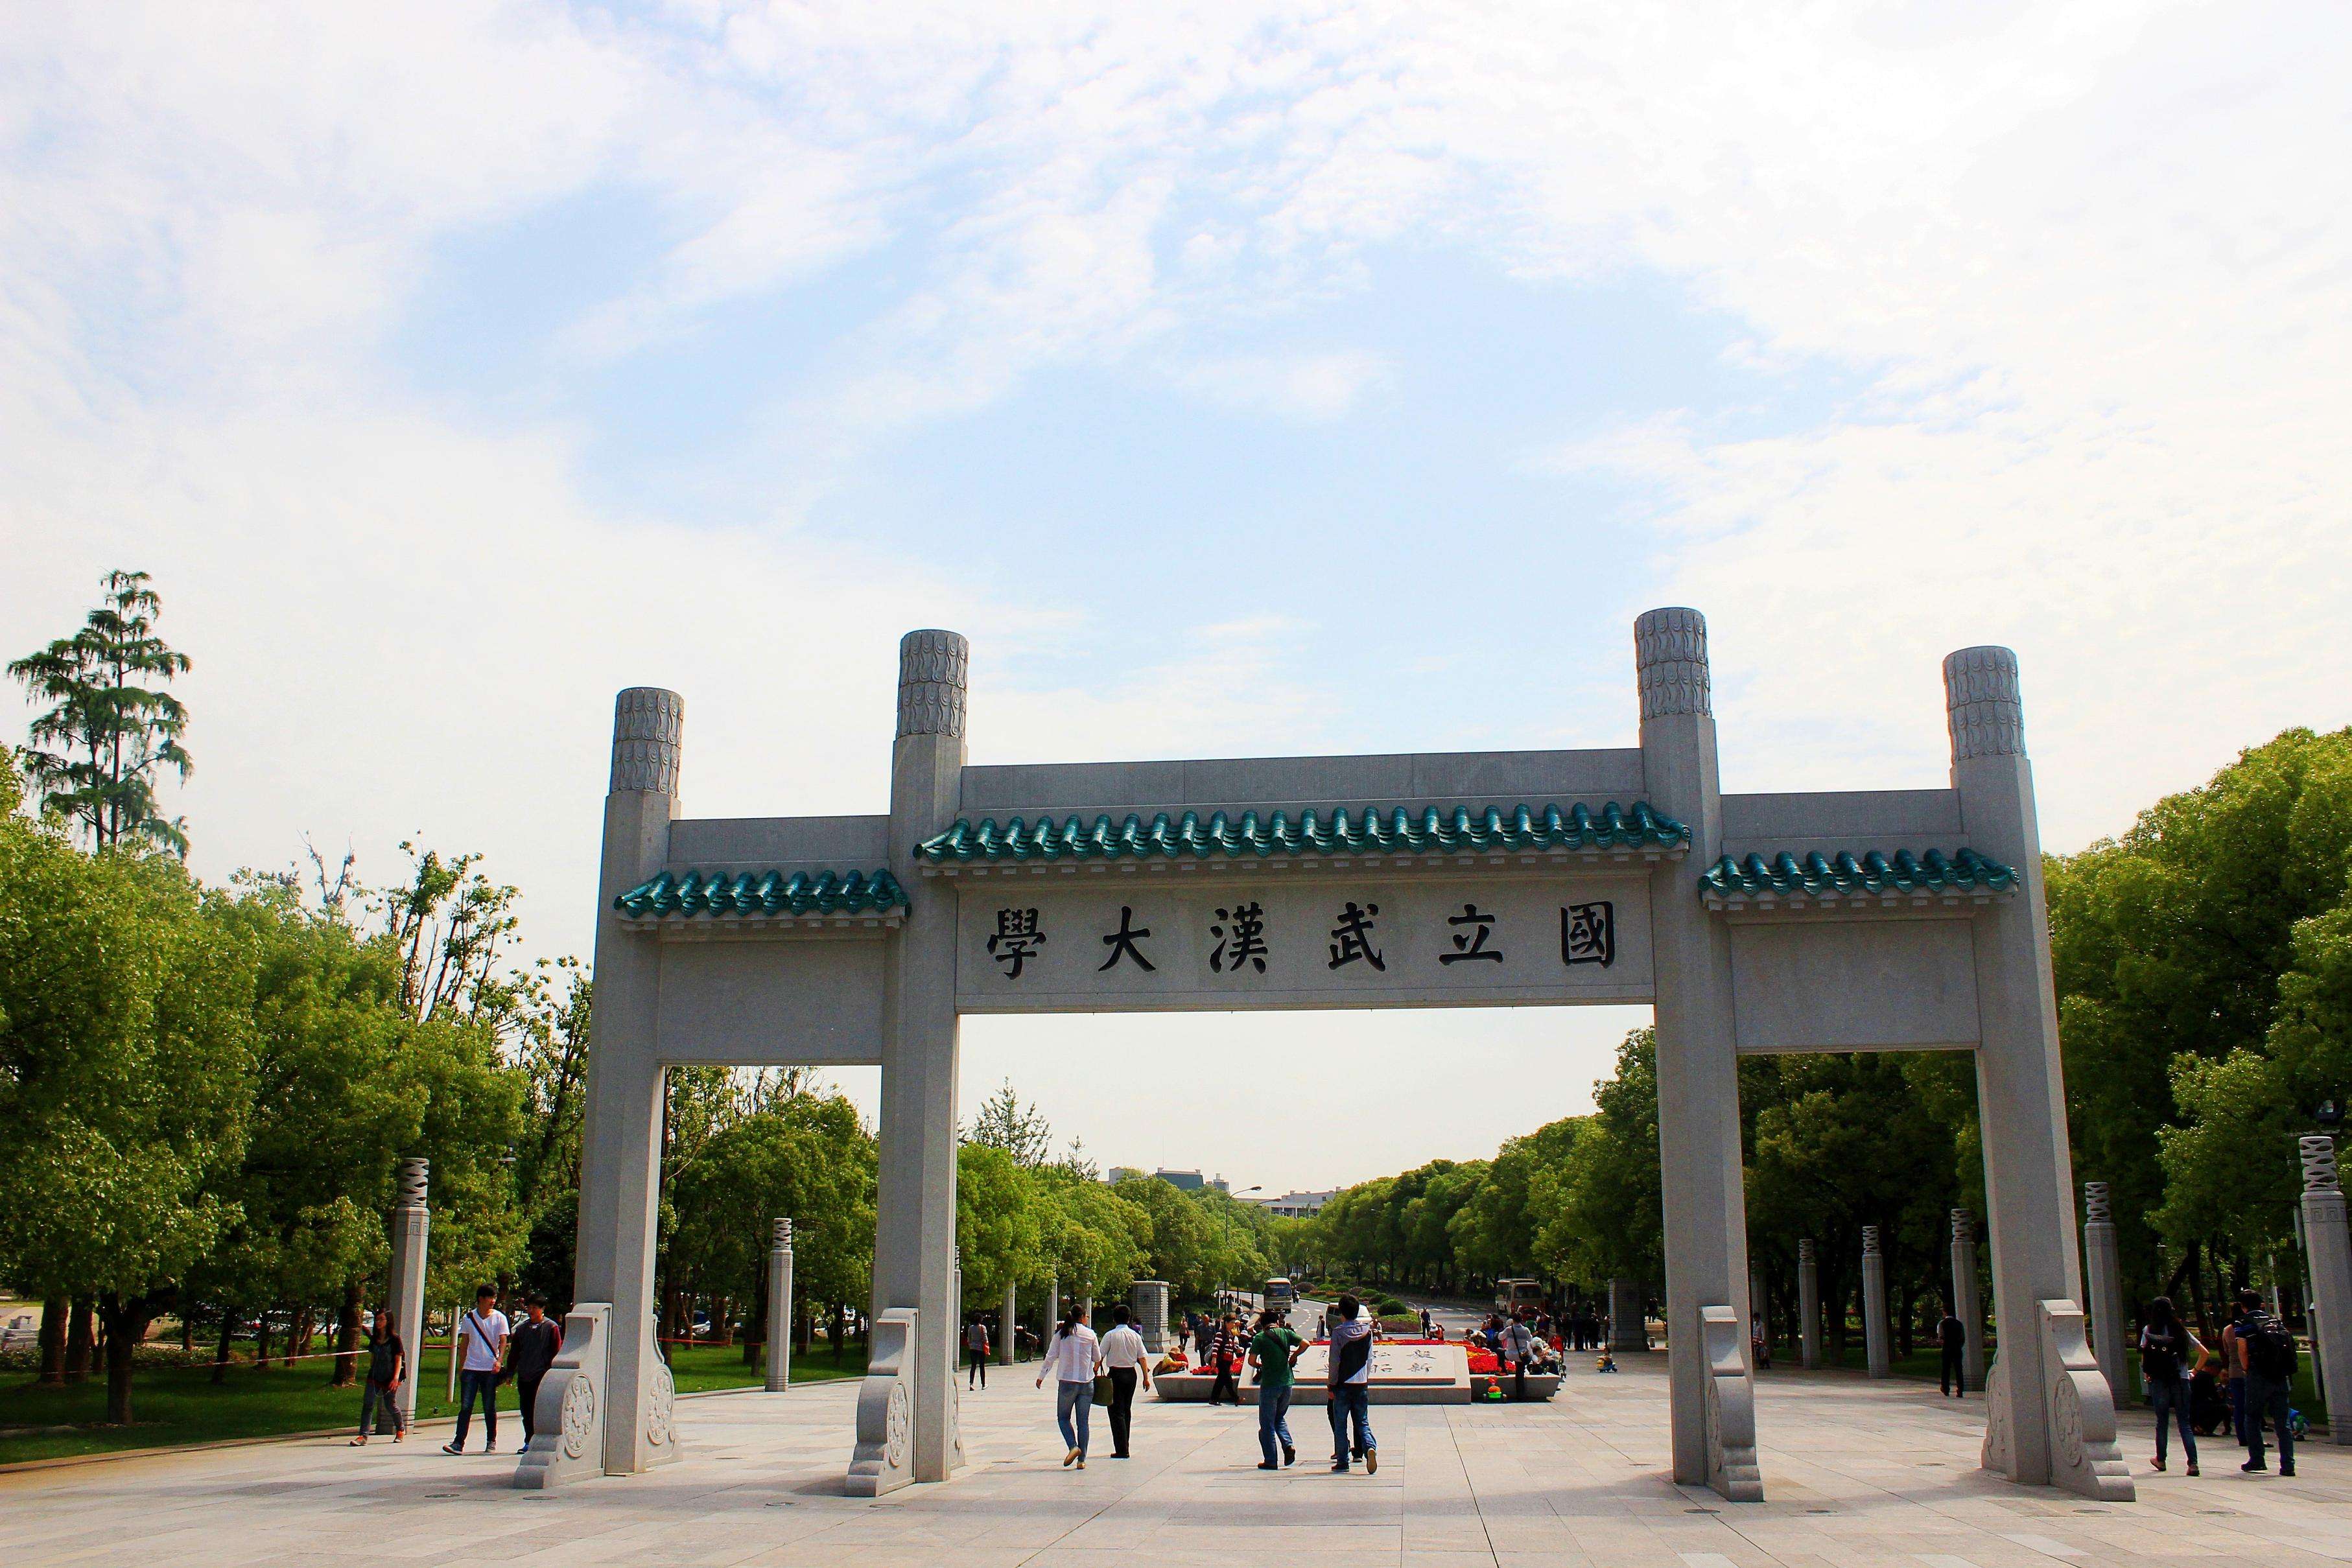 当时的武汉大学刚实行学分制,学分满了就可以毕业